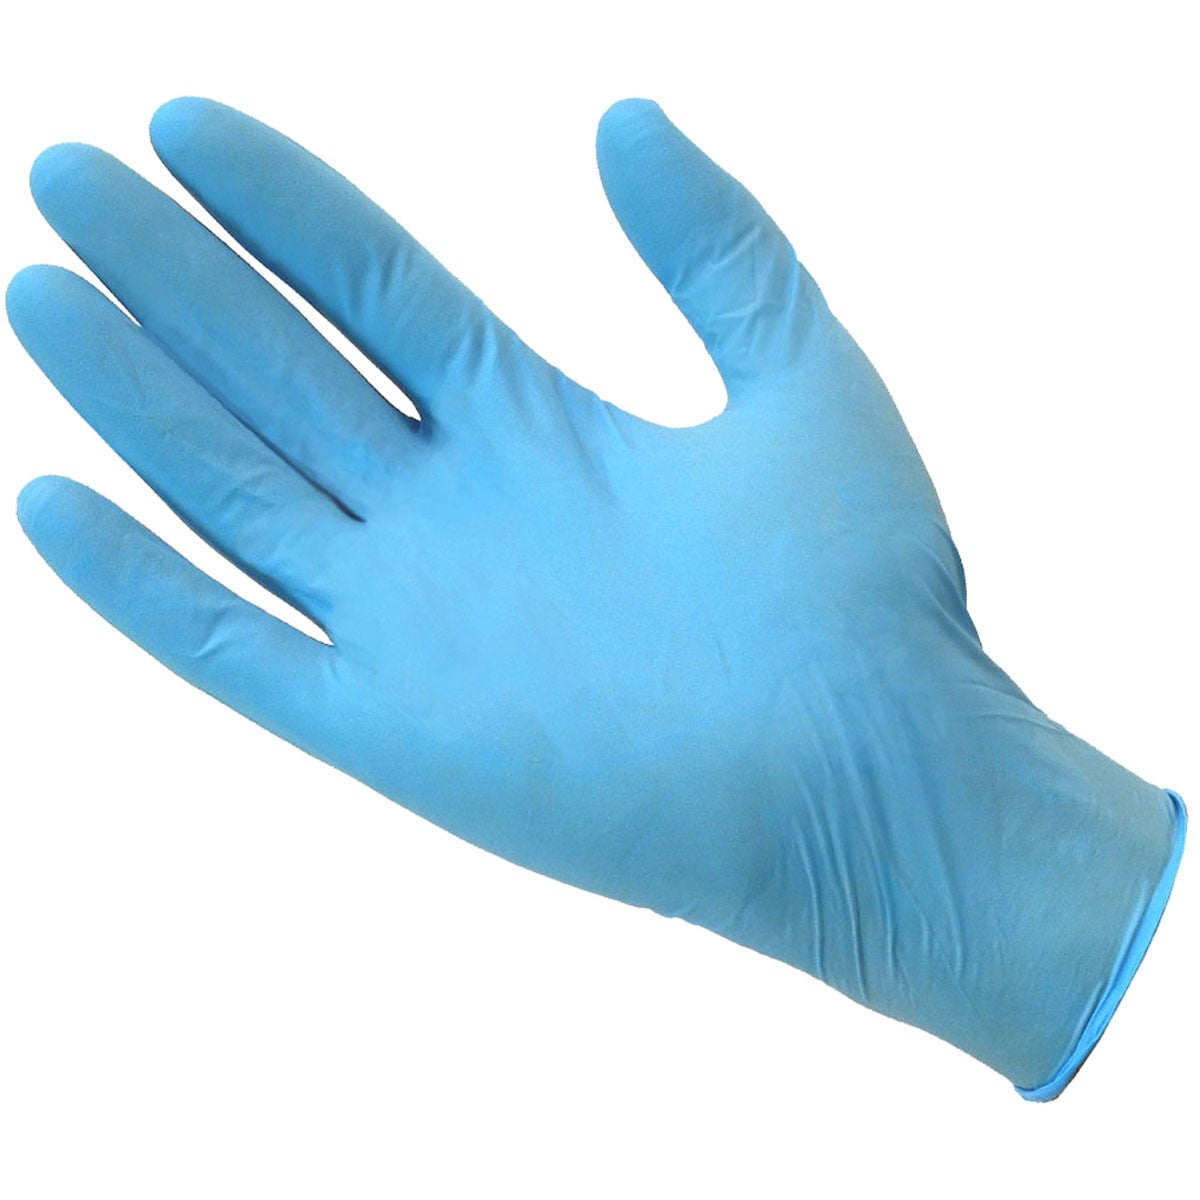 Перчатки медицинские из латекса натурального каучука. Перчатки одноразовые голубые. Ректальная перчатка. Blue Nitrile Gloves for work. Купить медицинские латексные перчатки